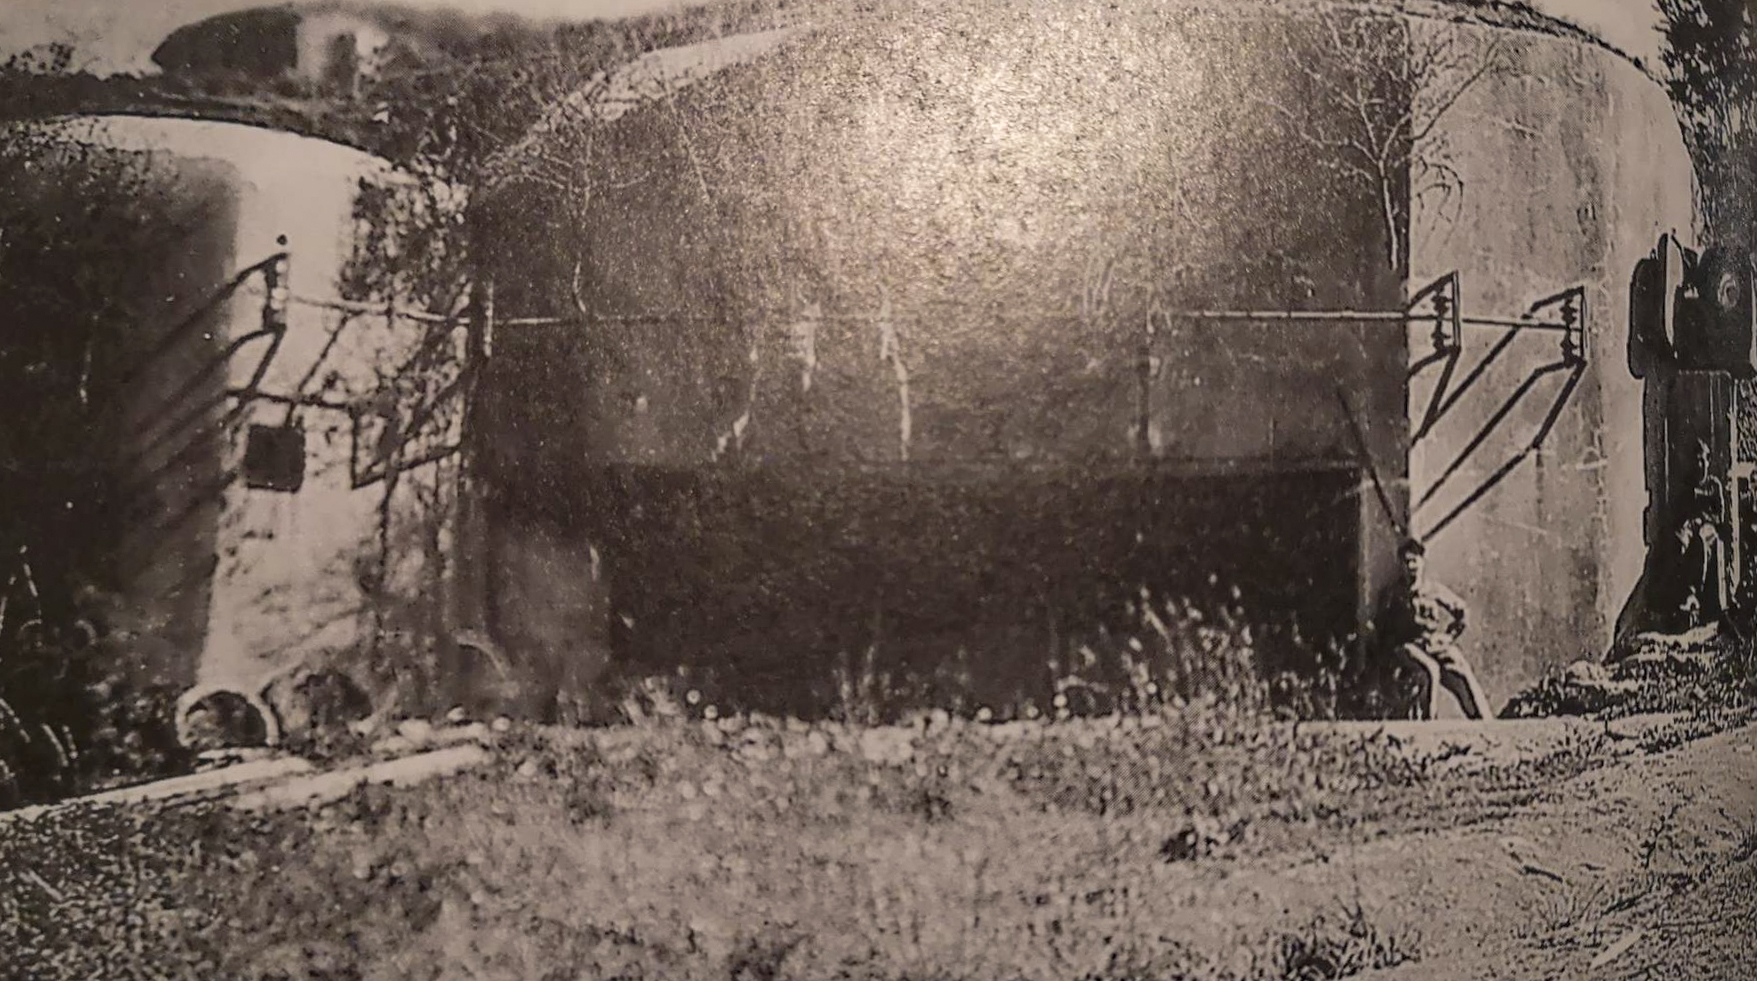 Ligne Maginot - METRICH - A17 - (Ouvrage d'artillerie) - Le bloc 3 en 1940
Casemate d'infanterie et  tourelle de mitrailleuses
Noter le projecteur blindé ouvert